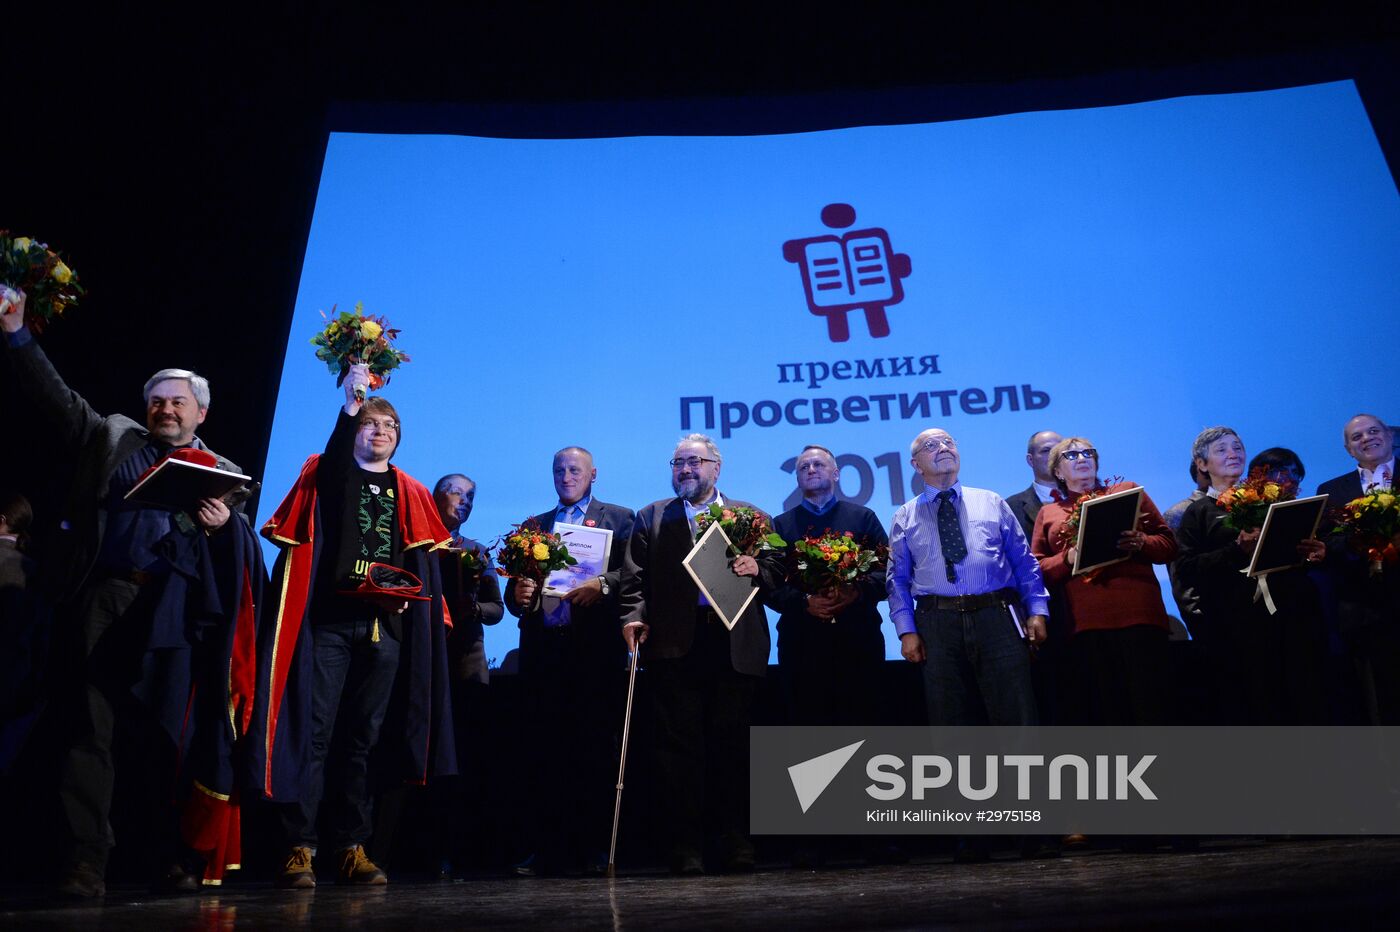 Prosvetitel 2016 Awards ceremony